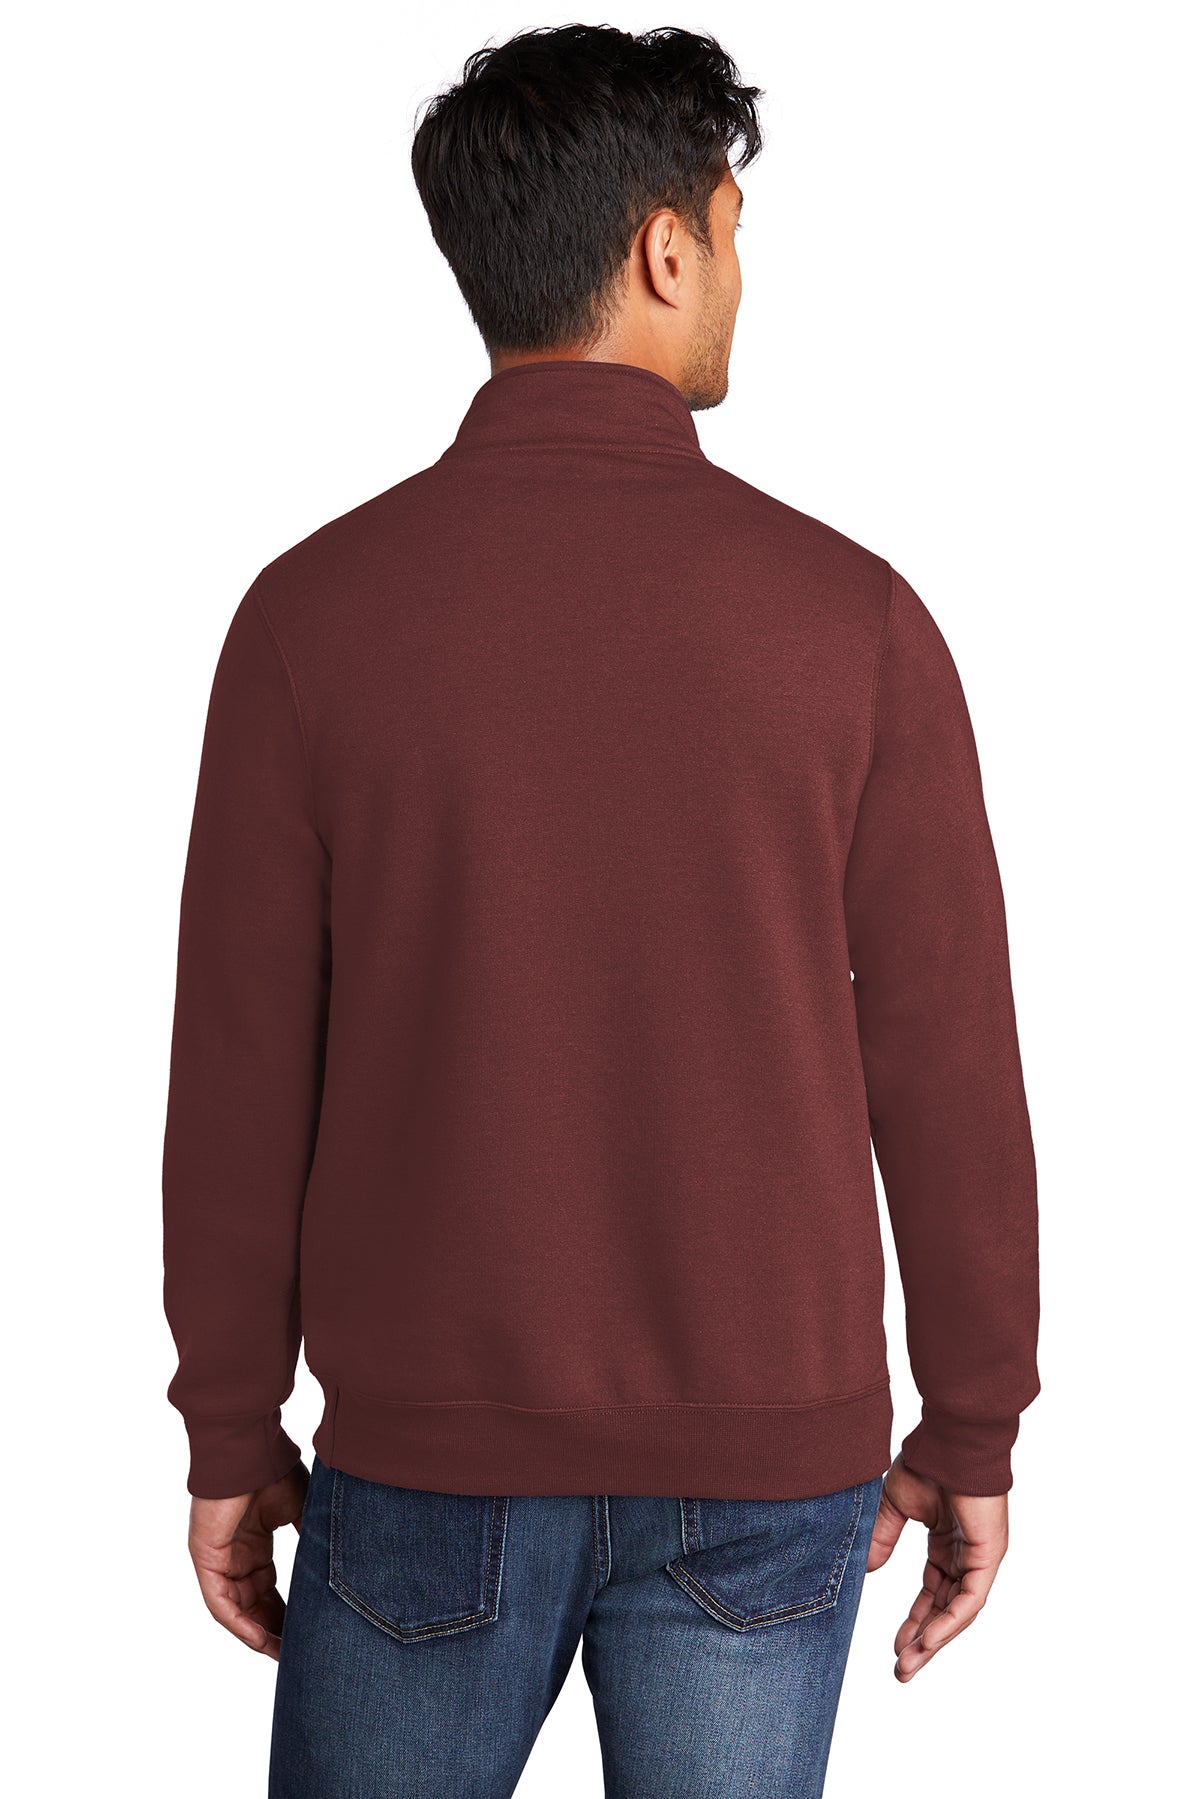 Port & Company Core Fleece 1/4-Zip Pullover Sweatshirt PC78Q Maroon